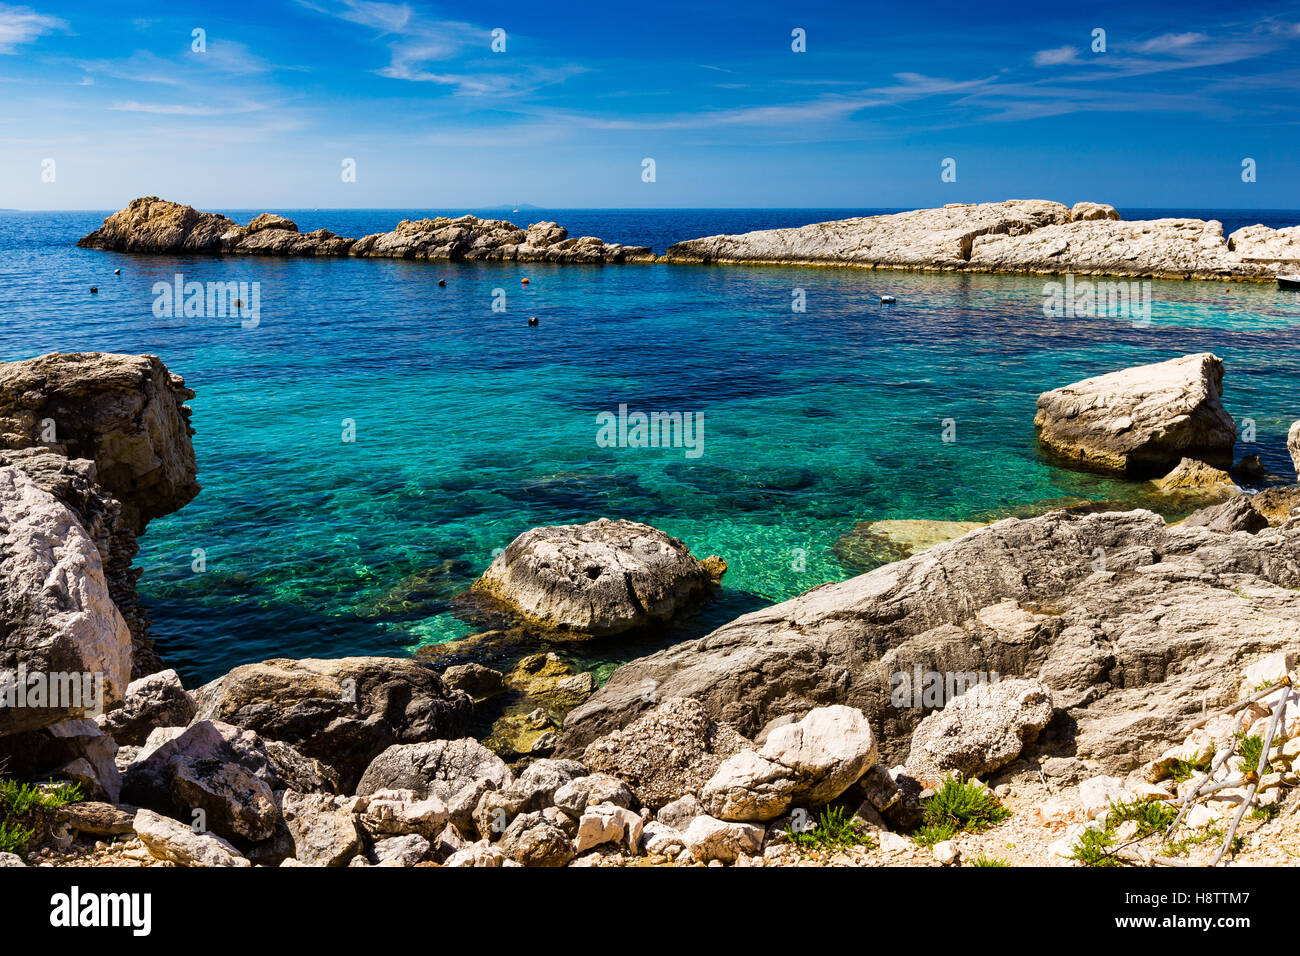 Spiaggia rocciosa di Zarace. Isola di Hvar, Croazia. Acqua marina adriatica. Croazia. Europa. Foto Stock